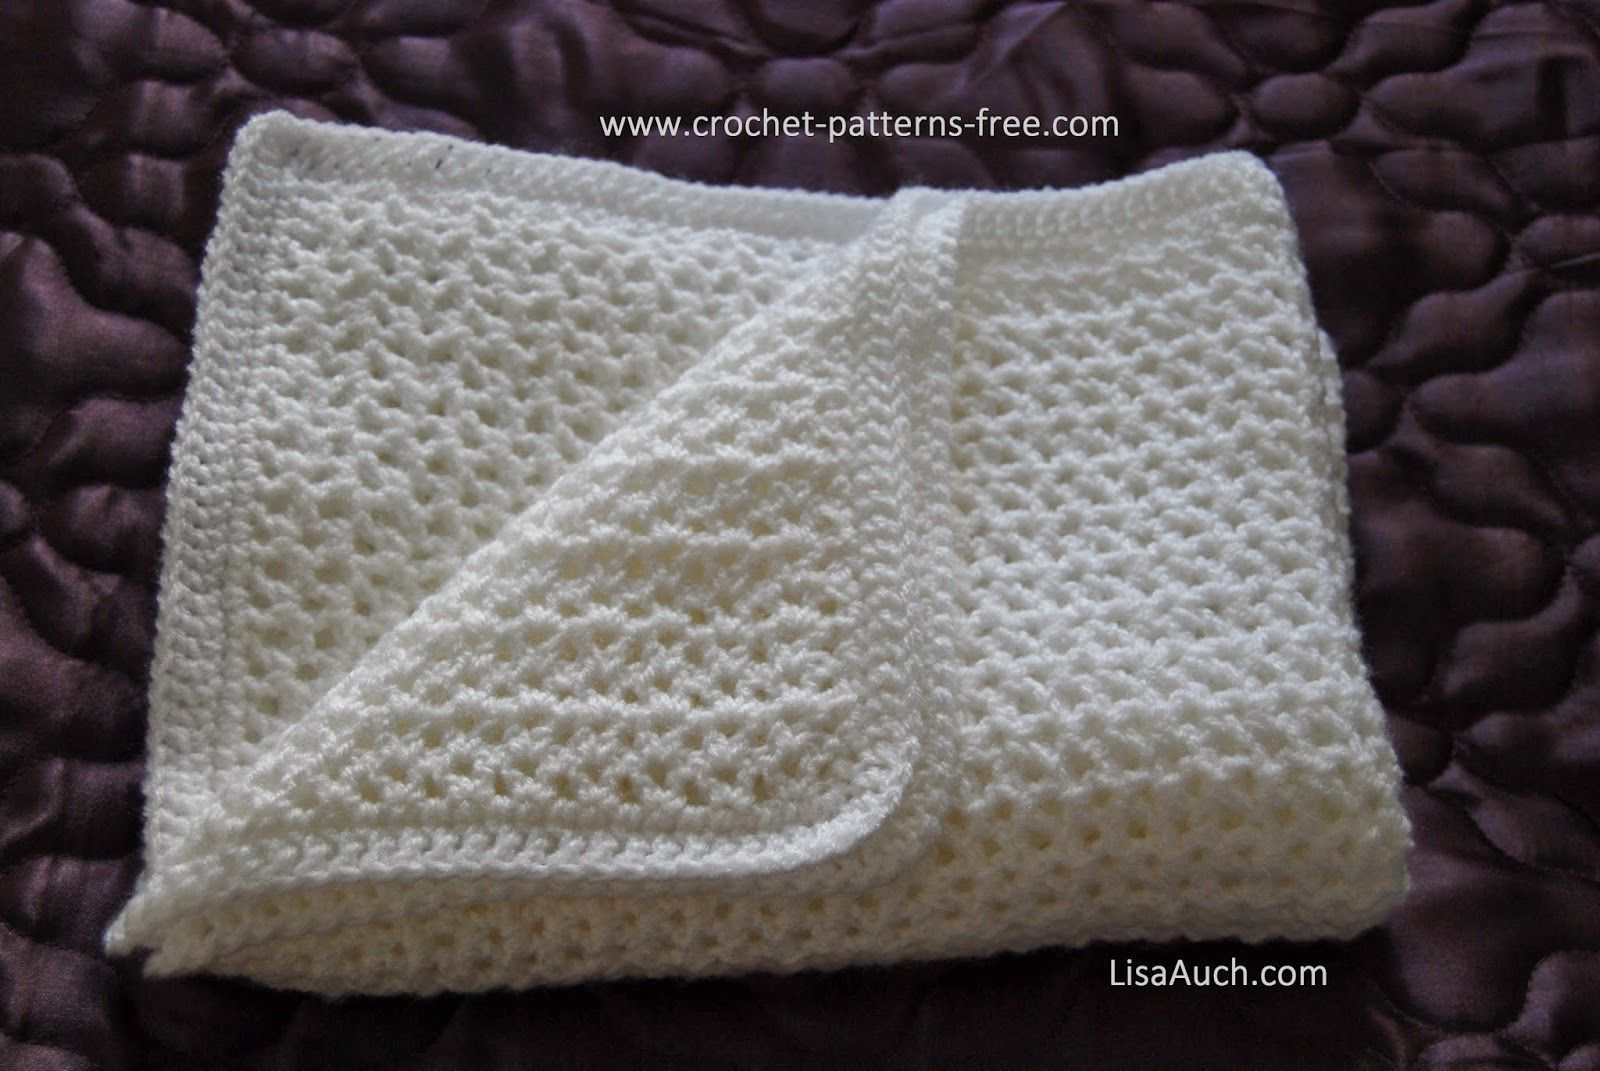 Beginner Crochet Blanket Patterns How To Crochet An Easy Ba Blanket Ideal For Beginners Free